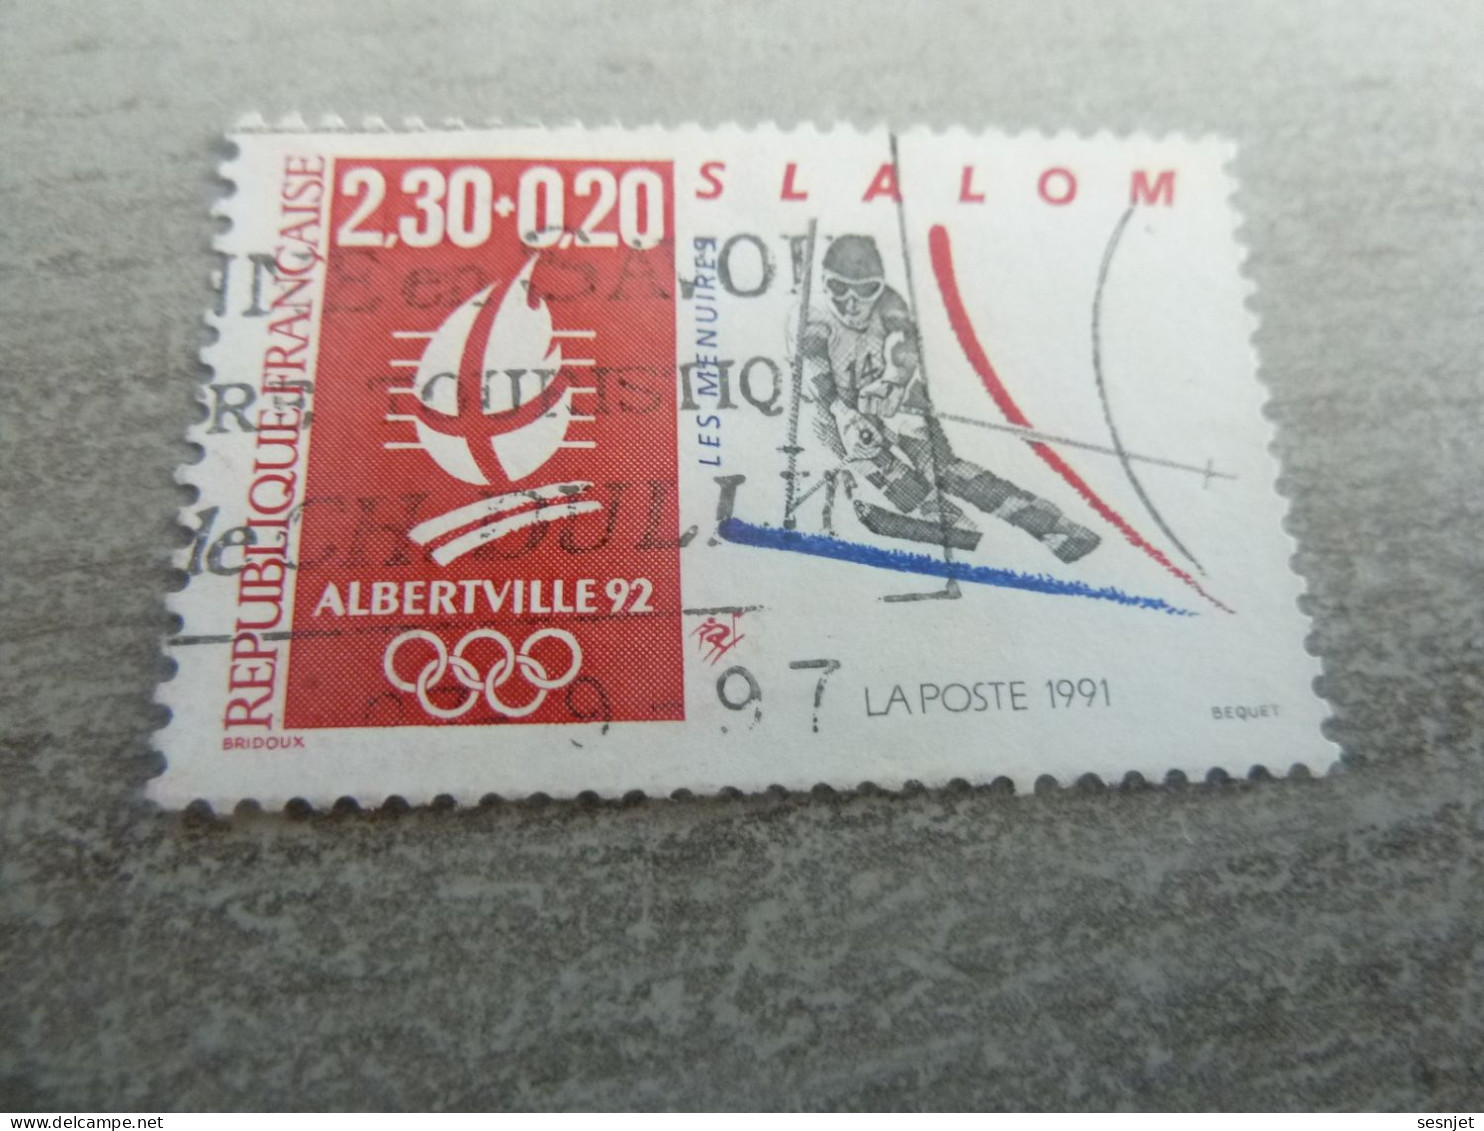 Les Ménuires - J.O D'Hiver 92 - Slalom - 2f.30+20c. - Yt 2676 - Rouge, Gris Et Bleu - Oblitéré - Année 1991 - - Winter 1992: Albertville